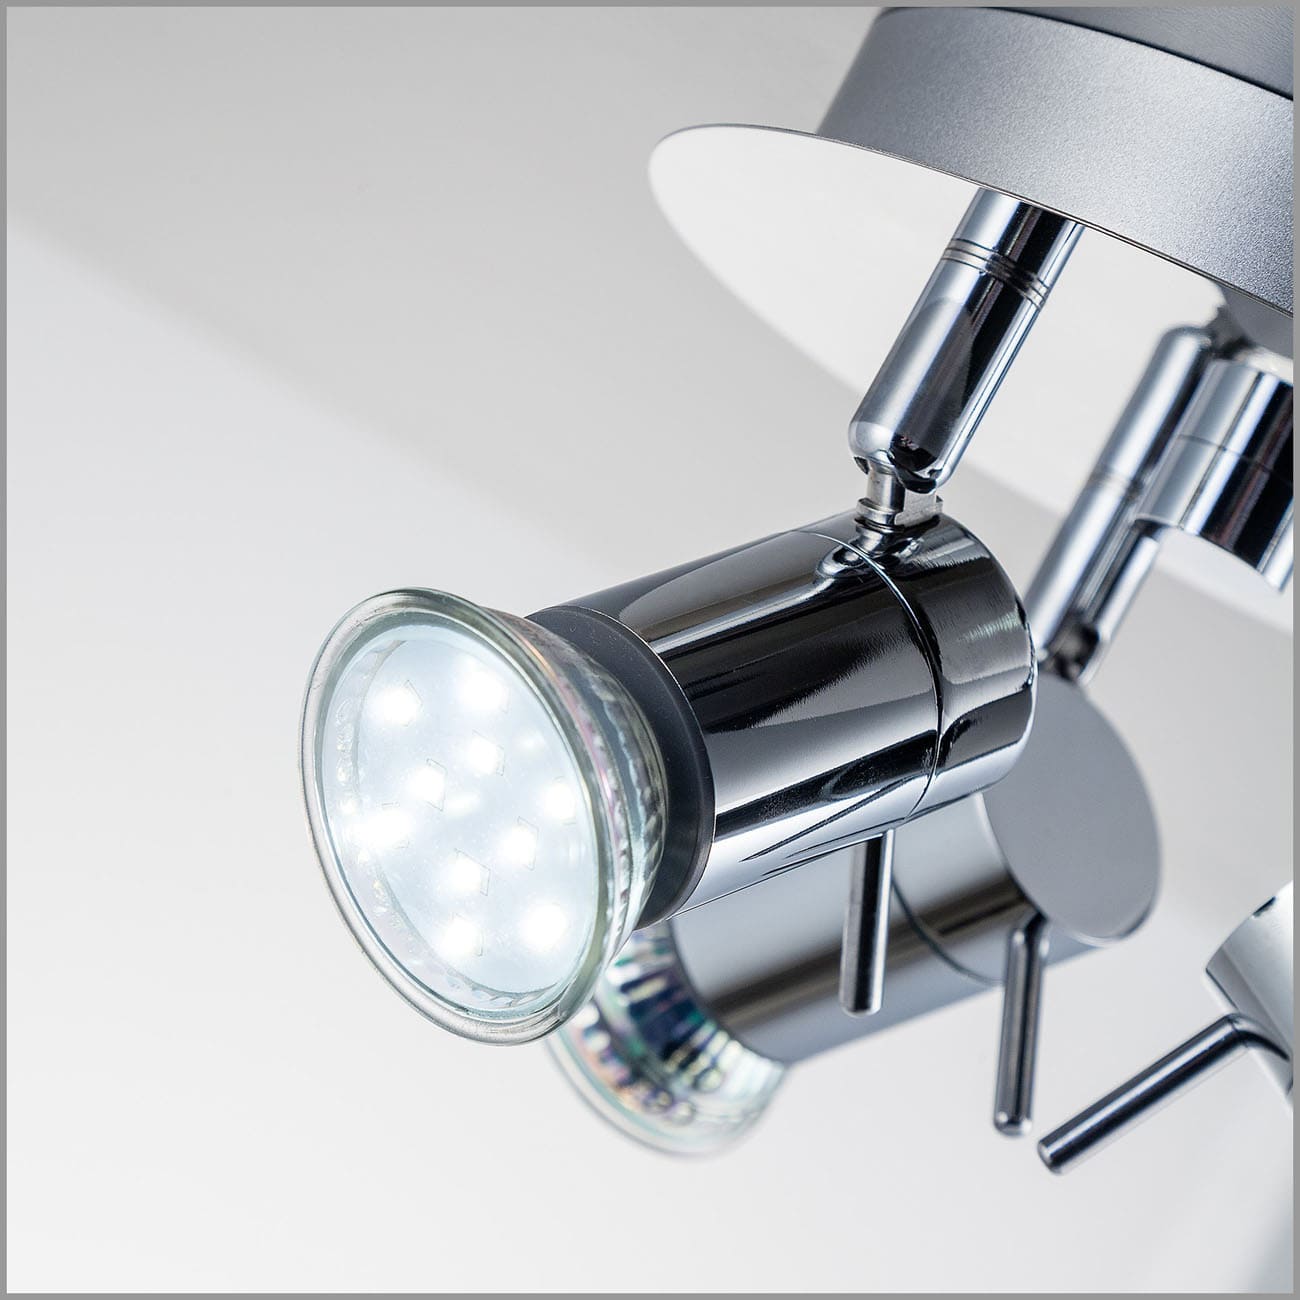 LED Bad-Deckenspot Ø16,5cm - 4-flammig - Badezimmer-Lampe IP44 230V GU10 9W 750lm warmweiß | Chrom - 5